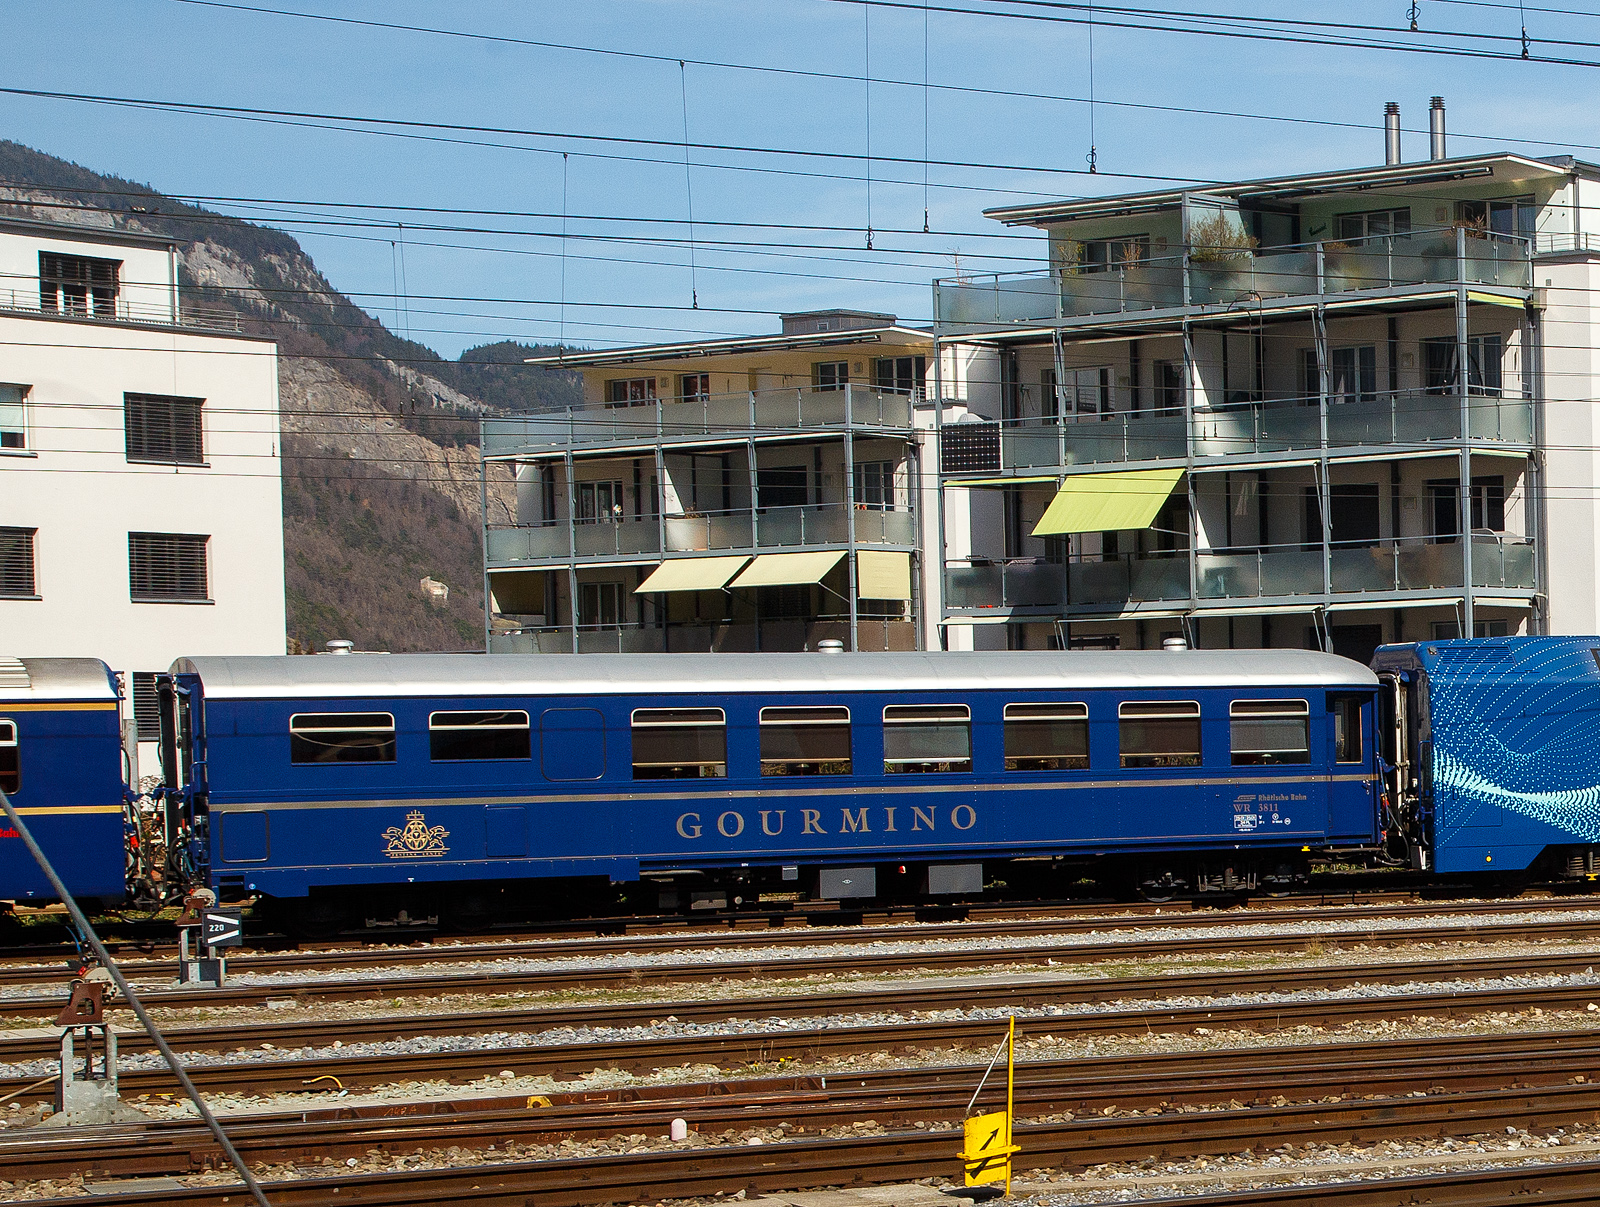 Der RhB Gourmino Speisewagen WR 3811, ex RhB Dr4ü 3811, ex Mitropa Dr4ü 11, am 22.03.2023 beim Bahnhof Chur abgestellt.

In den Jahren 1929 und 1930 beschaffte die Mitropa drei als Dr4ü 10-12 bezeichnete Speisewagen für den Einsatz in den Luxuszügen der Rhätischen Bahn. Diese Fahrzeuge liefen nicht nur im Glacier Express, sondern auch im Engadin Express und auf Verbindungen nach Davos. Lieferant war die Schweizerische Waggons- und Aufzügefabrik Schlieren (SWS). 1949 ersteigerte die RhB die Speisewagen von der Mitropa.
Die Bezeichnung Dr4ü 10-12 wurde 1956 in Dr4ü 3810-3812 und später in WR 3810-3812 geändert.

WR 3812 wurde 1974 versuchsweise modernisiert und mit Mikrowellenherden ausgerüstet. WR 3810-3811 hingegen wurden 1982 bzw. 1983 als nostalgische Speisewagen hergerichtet und mit einer neuen Kücheneinrichtung versehen, die eine Zubereitung frischer Speisen gestattet.

1996 wurde WR 3812 generalüberholt, wobei die RhB auch die Inneneinrichtung weitgehend in den Originalzustand zurückversetzte. Bei dieser Gelegenheit tauschte der Wagen sein rotes gegen ein königsblaues Farbkleid mit großem  Gourmino -Schriftzug ein. Diesen auffälligen Farbton erhielten später ebenfalls WR 3810-3811. Alle drei Wagen wurden inzwischen erneut umlackiert und präsentieren sich heute im noblen Blauton des Alpine Classic Pullman Express (ACPE). Der Gourmino fährt meist auf der spektakulären Albulalinie zwischen Chur und St. Moritz.

TECHNISCHE DATEN:
Baujahr und Hersteller: 1929 / SWS
Spurweite: 1.000 mm
Anzahl der Achsen: 4
Länge über Puffer: 16.440 mm
Sitzplätze: 36
Eigengewicht: 25,0 t
zulässige Geschwindigkeit: 90 km/h
Lauffähig: StN (Stammnetz) / MGB (Matterhorn Gotthard Bahn)
